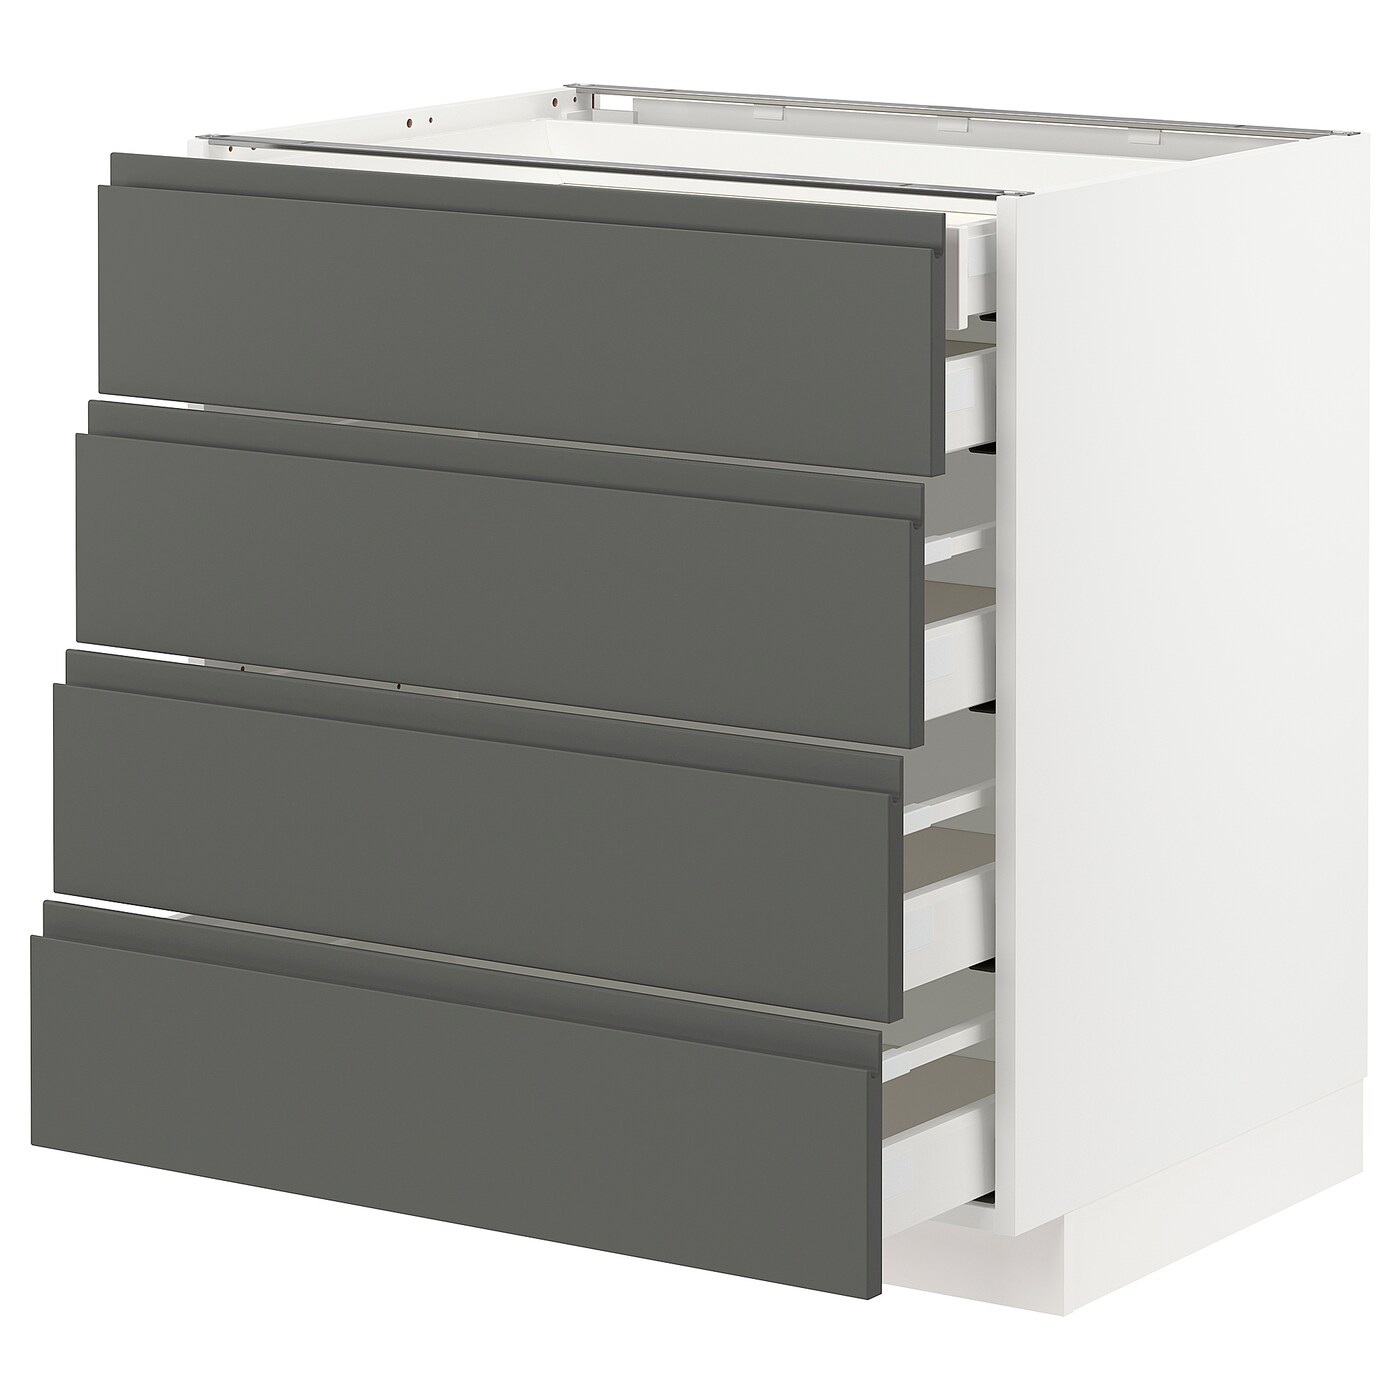 Напольный кухонный шкаф  - IKEA METOD MAXIMERA, 88x62,1x80см, белый/серый, МЕТОД МАКСИМЕРА ИКЕА